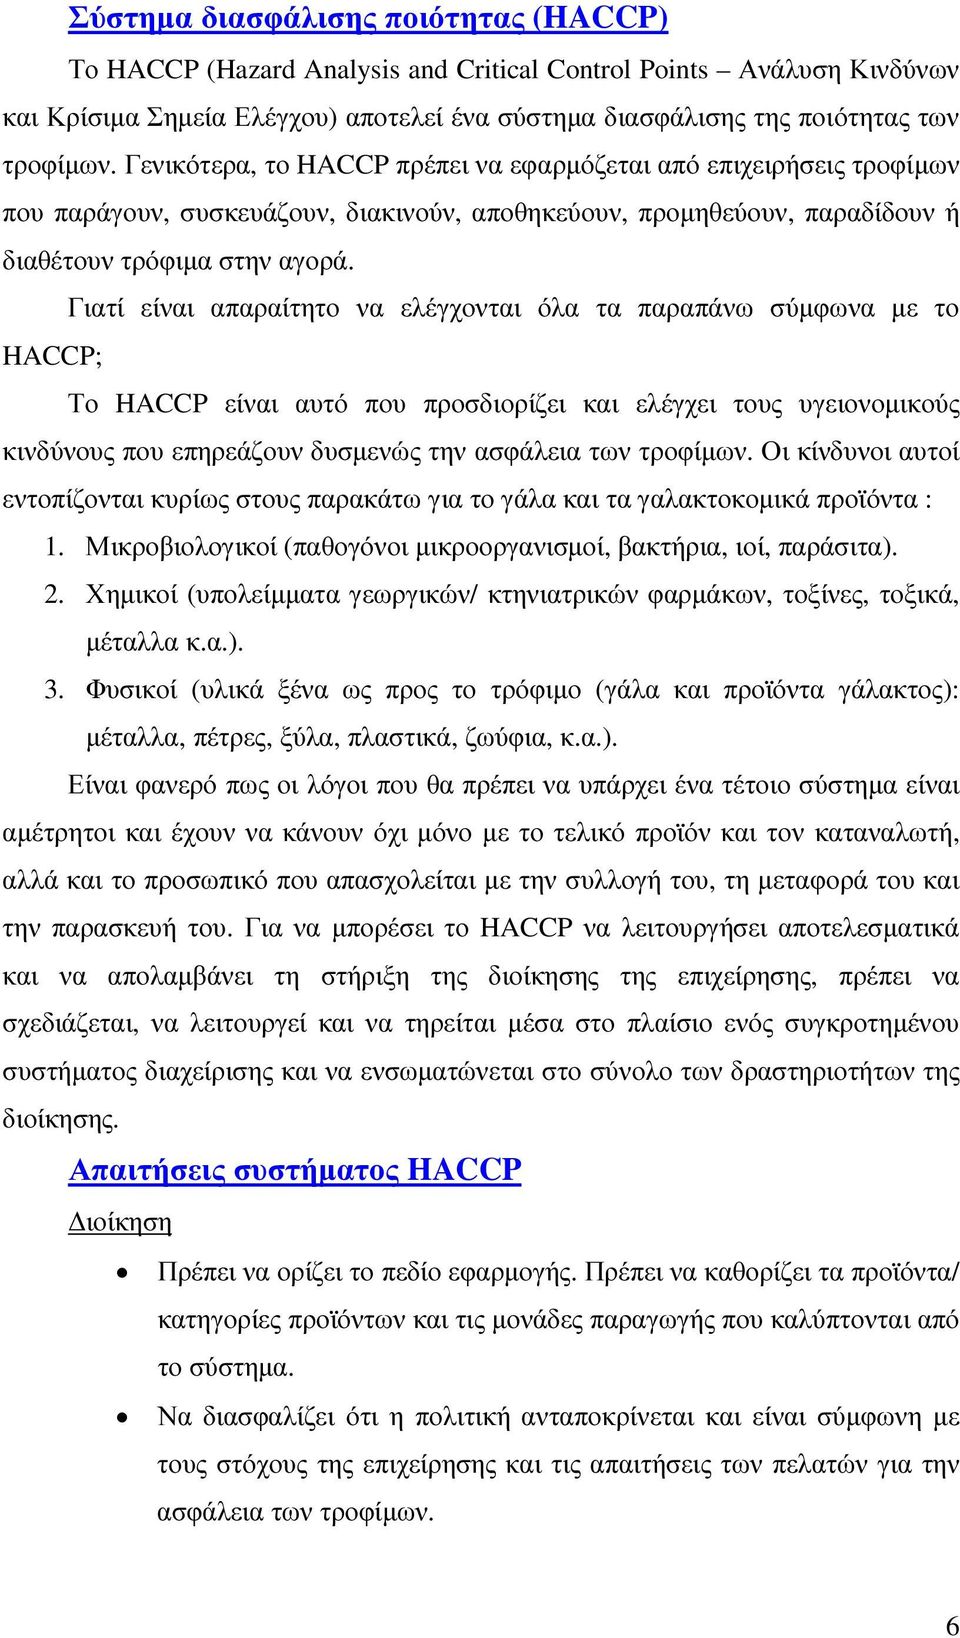 Γιατί είναι απαραίτητο να ελέγχονται όλα τα παραπάνω σύµφωνα µε το HACCP; Το HACCP είναι αυτό που προσδιορίζει και ελέγχει τους υγειονοµικούς κινδύνους που επηρεάζουν δυσµενώς την ασφάλεια των